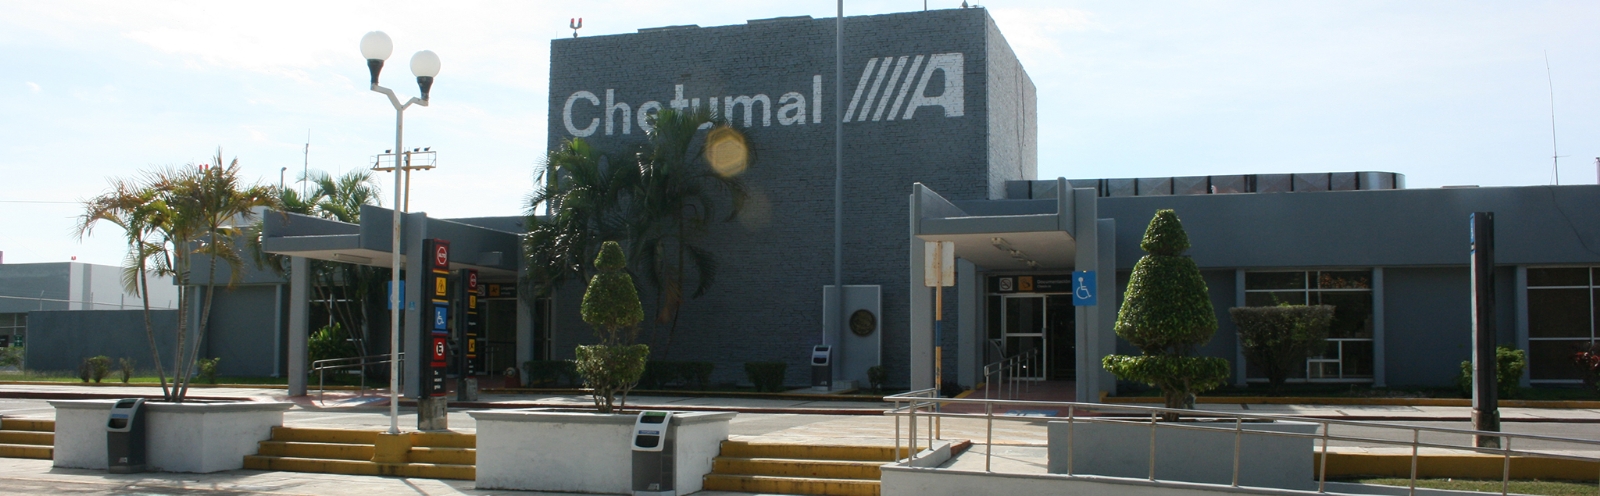 Vacuna contra el COVID-19 llega hoy a Chetumal, Quintana Roo